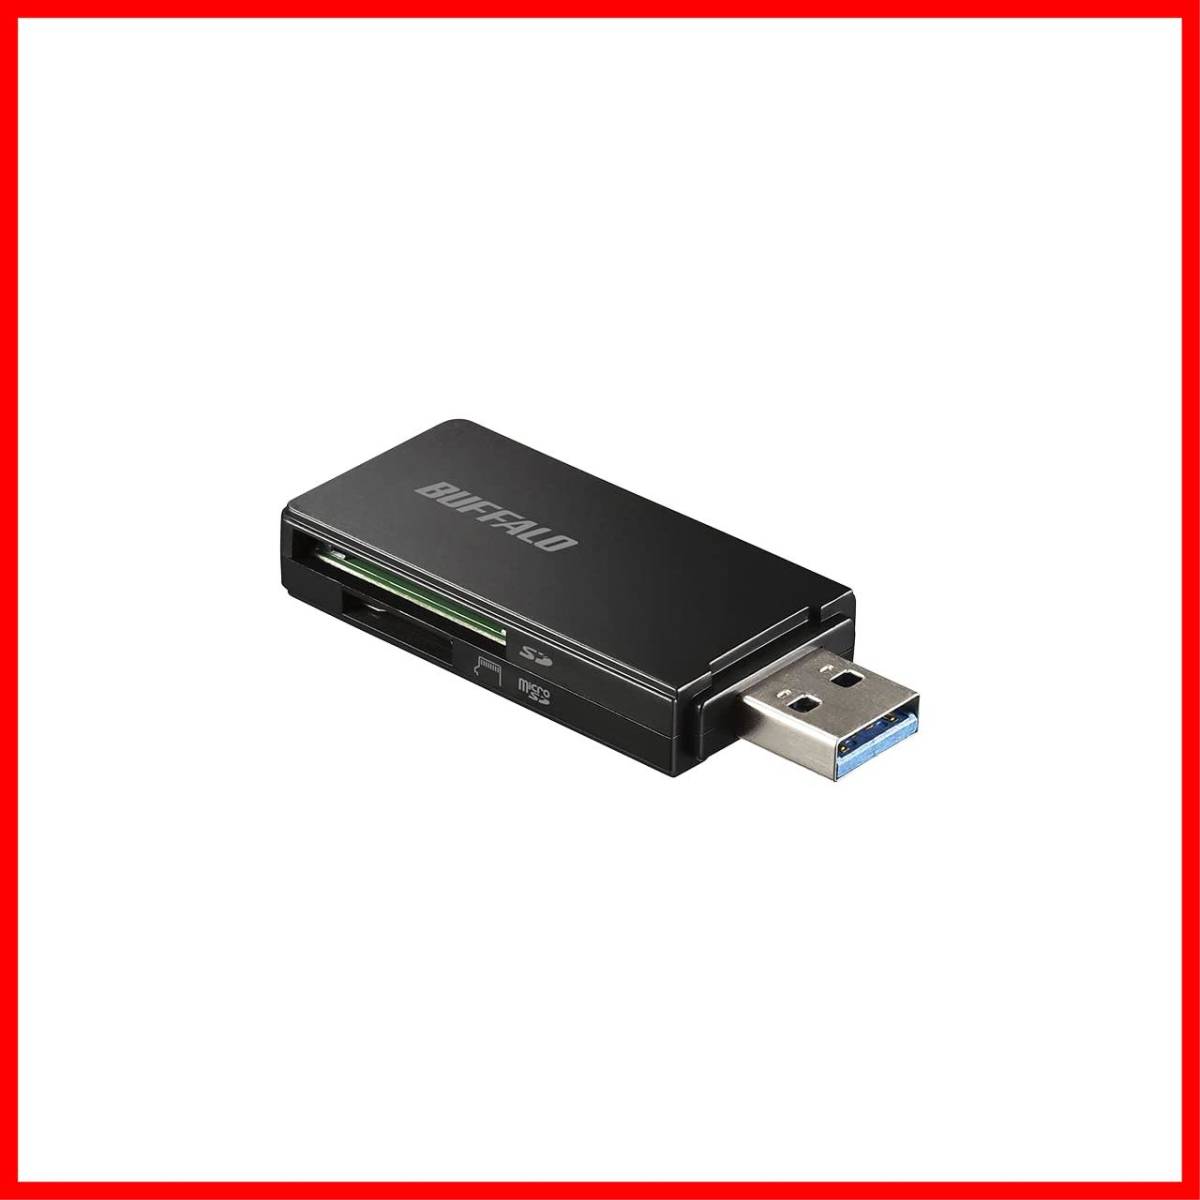 【新着商品】バッファロー BUFFALO USB3.0 microSD/SDカード専用カードリーダー ブラック BSCR27U3B